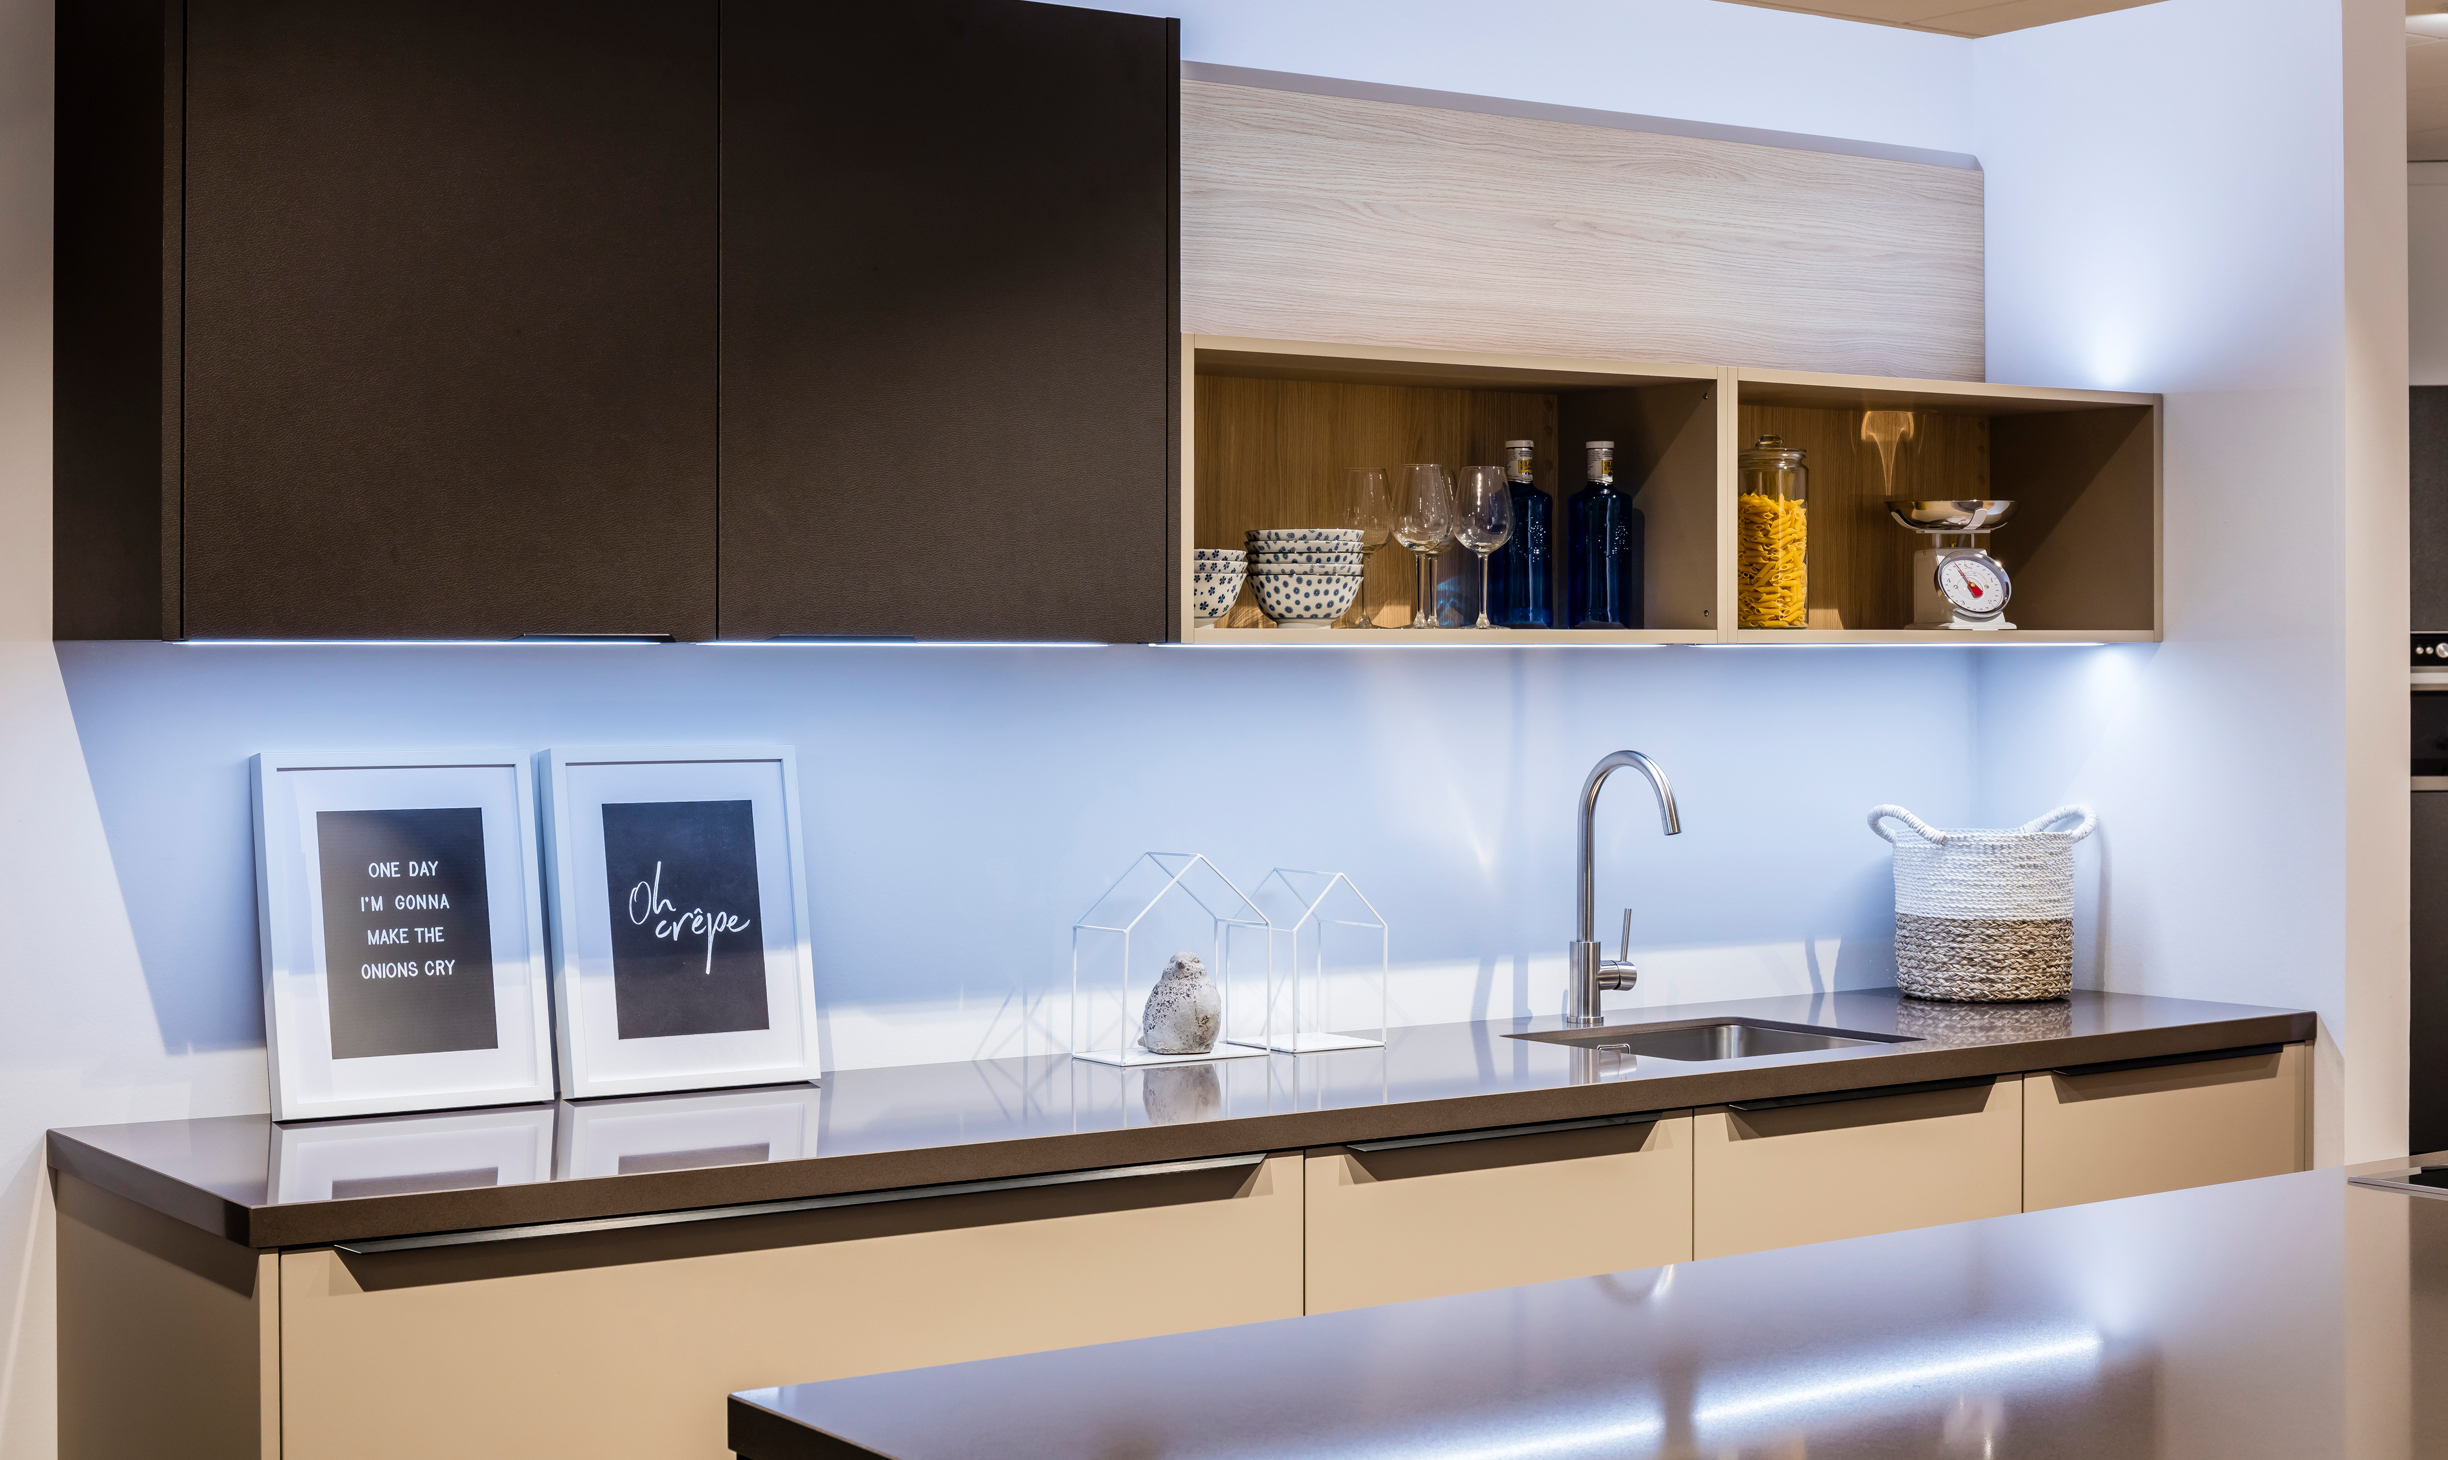 Transparant erosie mouw Keukenverlichting: Werk- en sfeerverlichting voor uw keuken